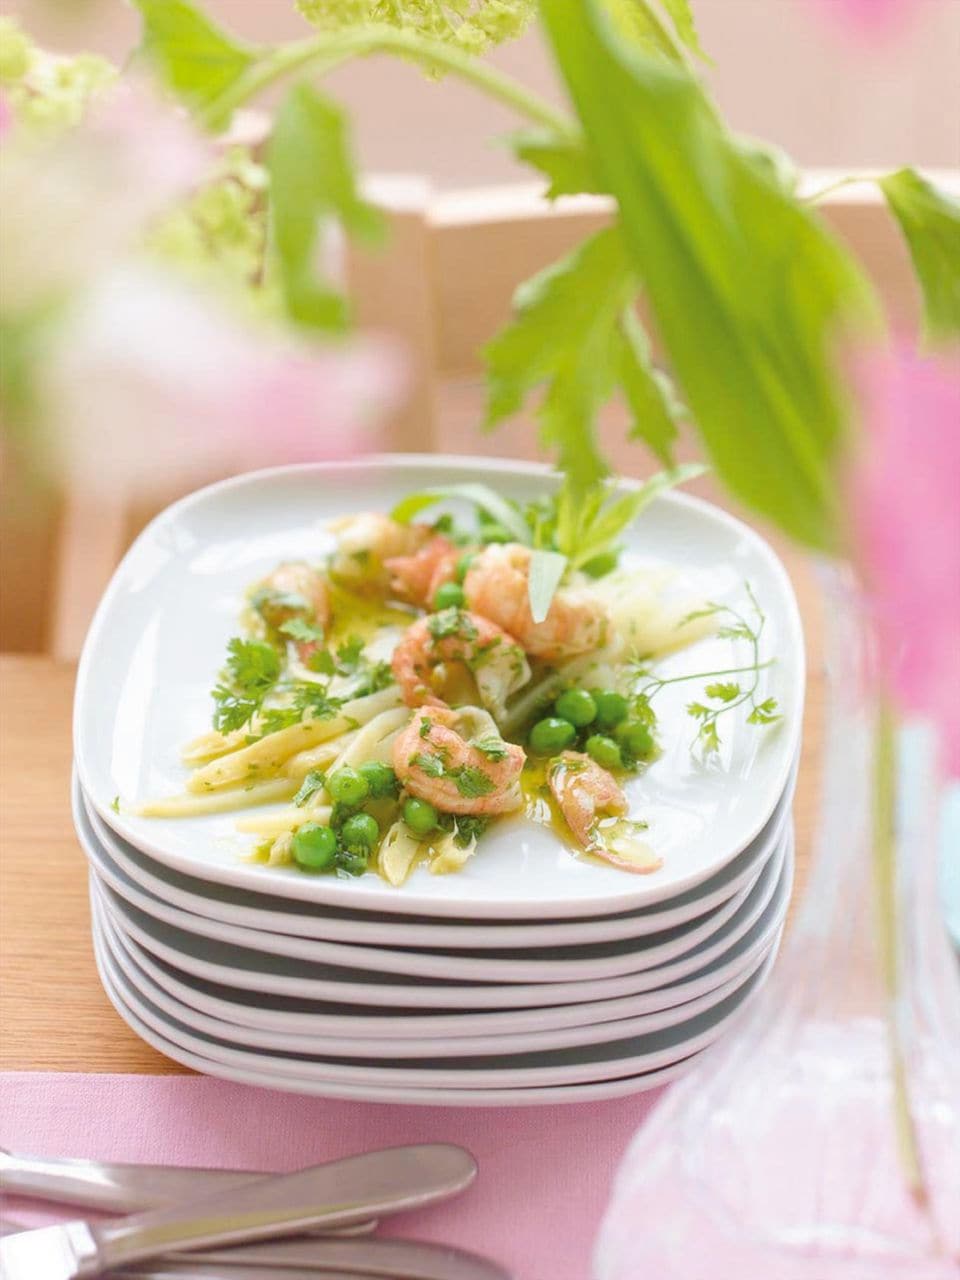 Spargel-Salat mit Flusskrebsen